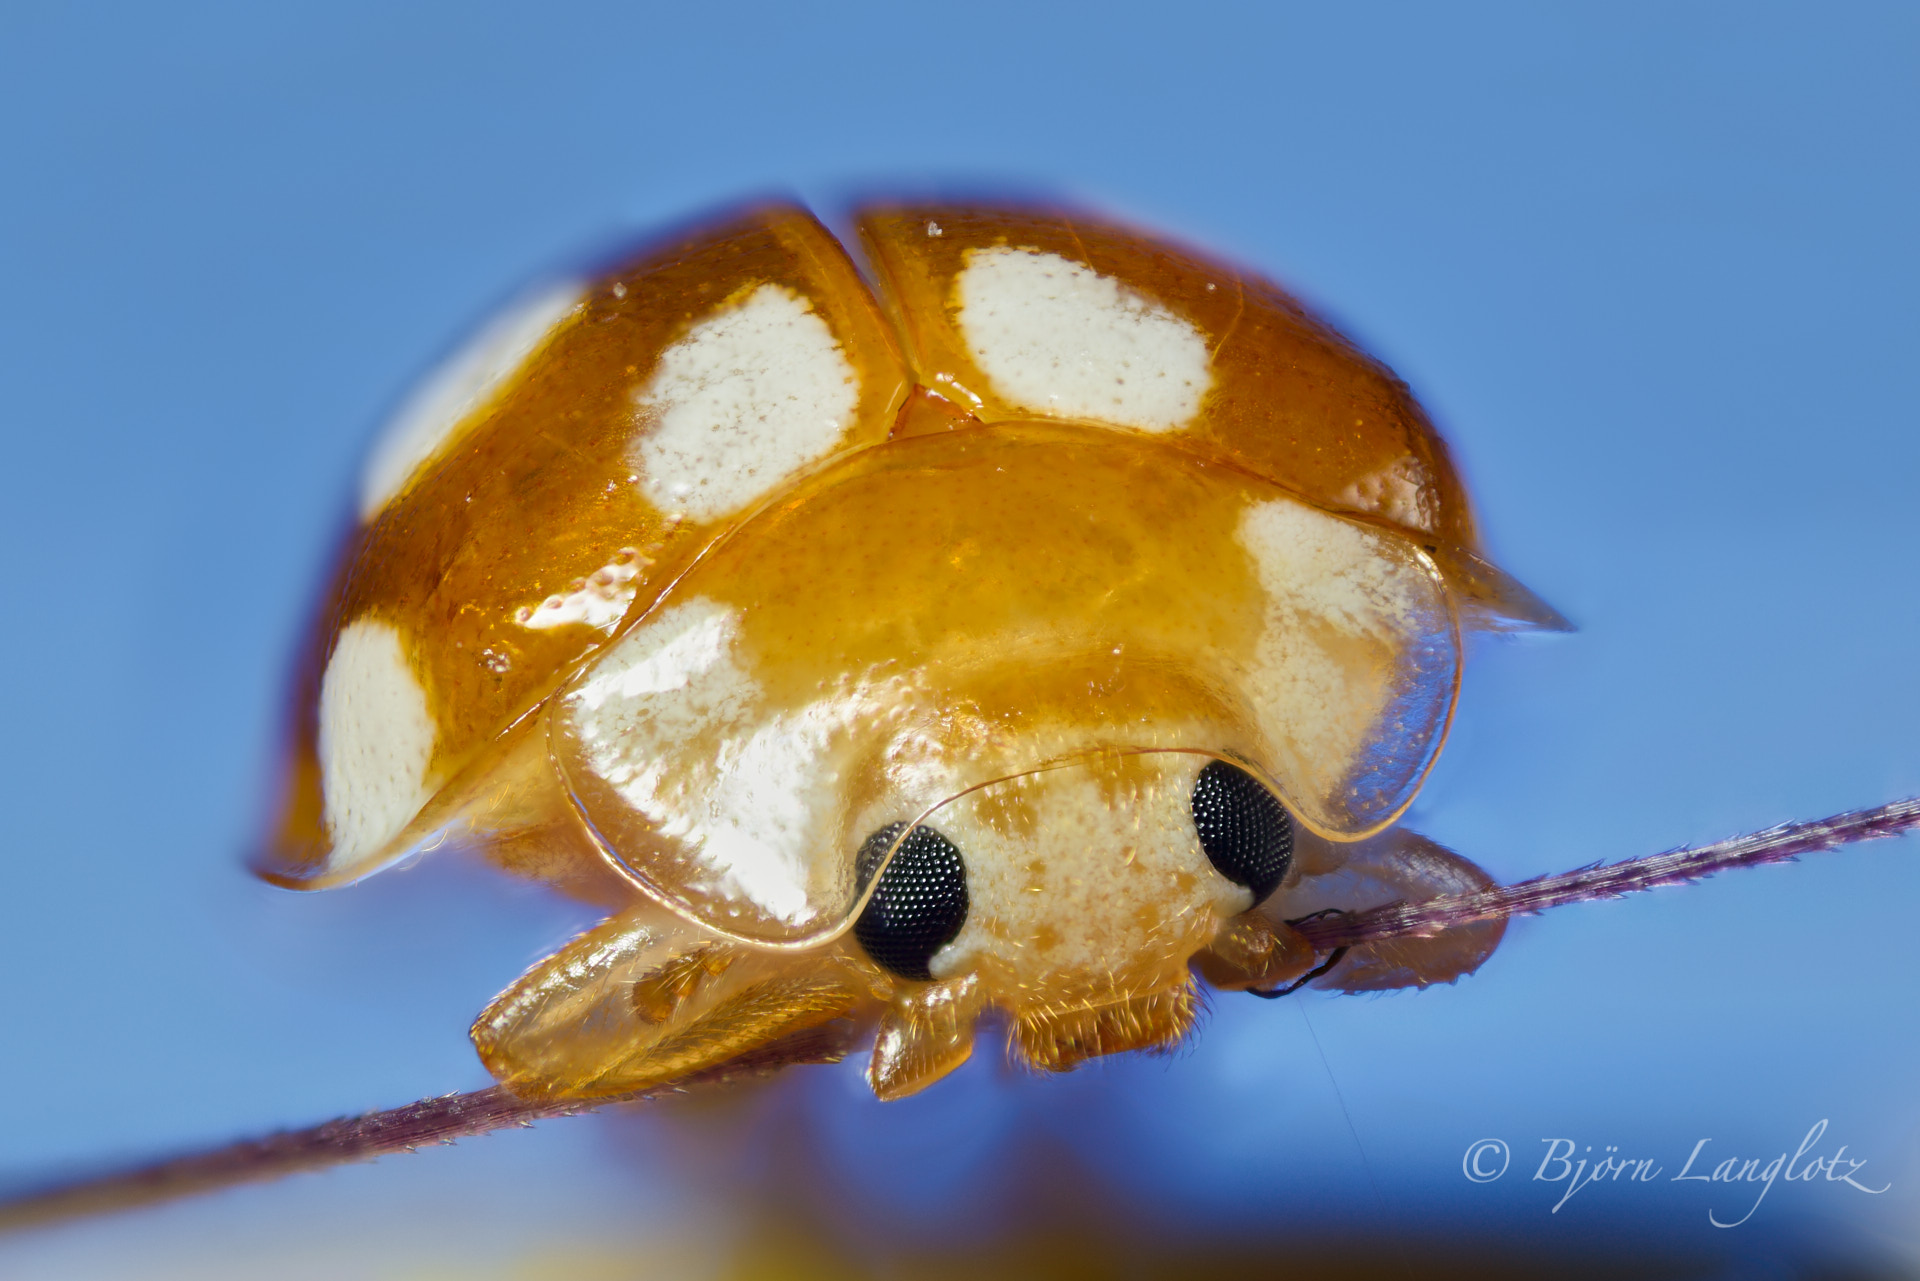 Diese ebenfalls extreme Makrofotografie zeigt einen Zwölffleckige Pilz-Marienkäfer (Vibidia duodecimguttata) bei 10-facher Vergrößerung.Kamera: NIKON D800E Leica Photoar II 25 mm1/200 s bei Blende f/2.0